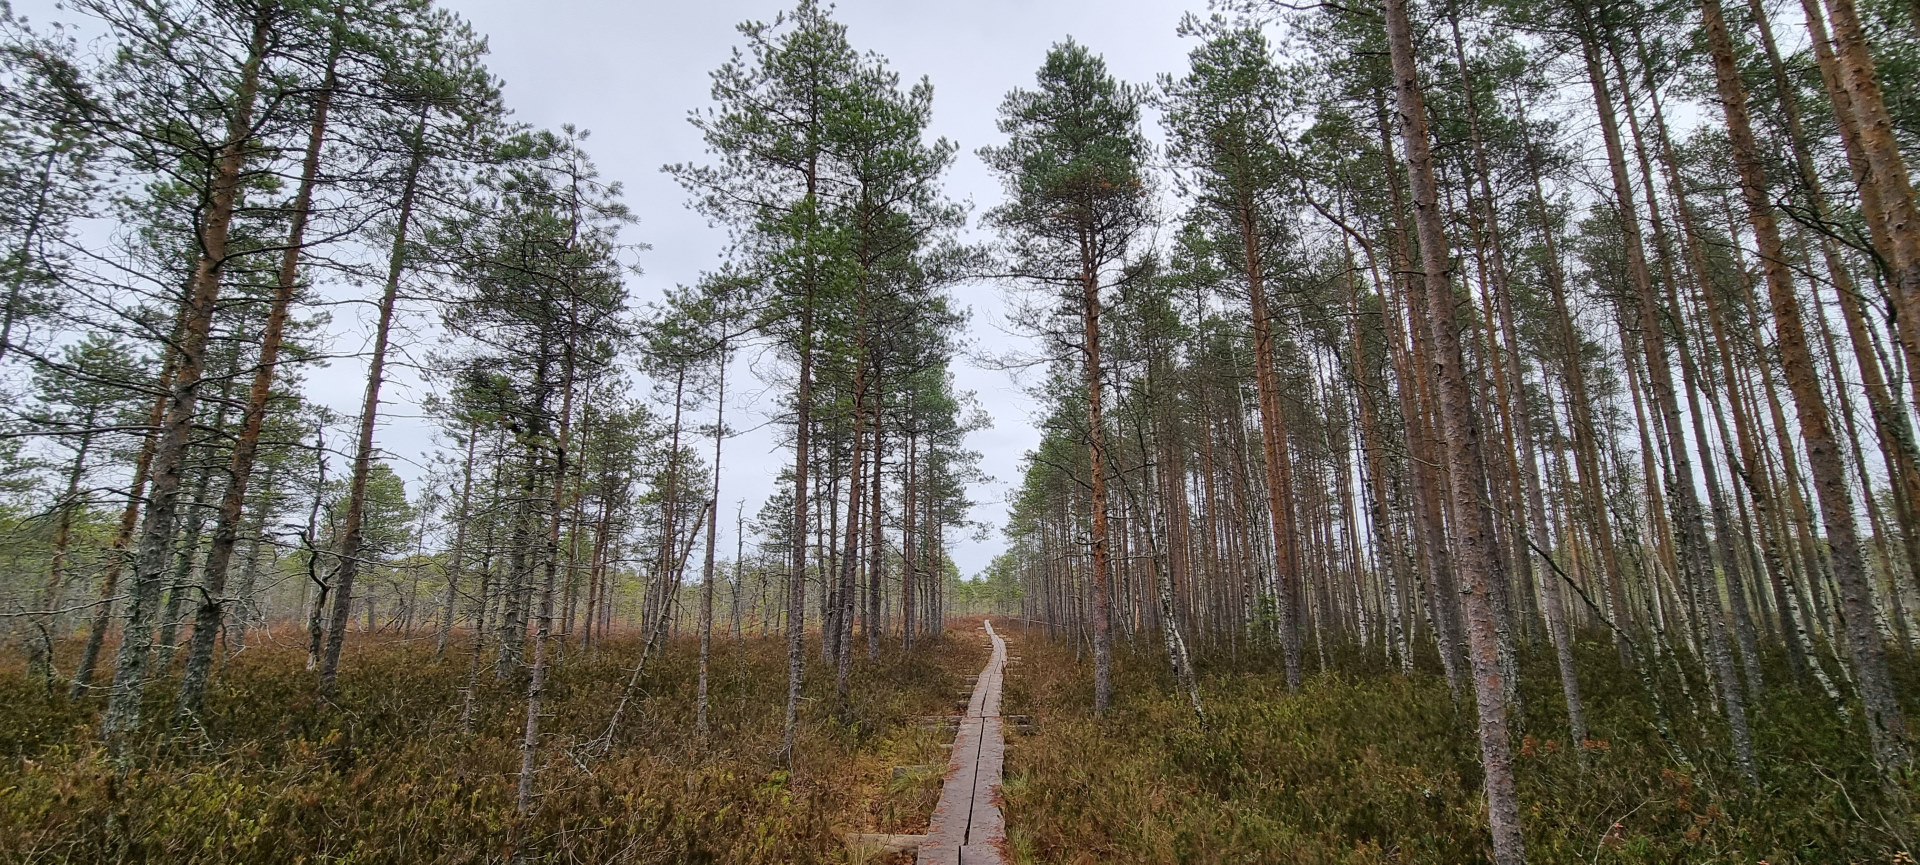 Jokikylän luontopolku Uittomiehen lenkki nature path